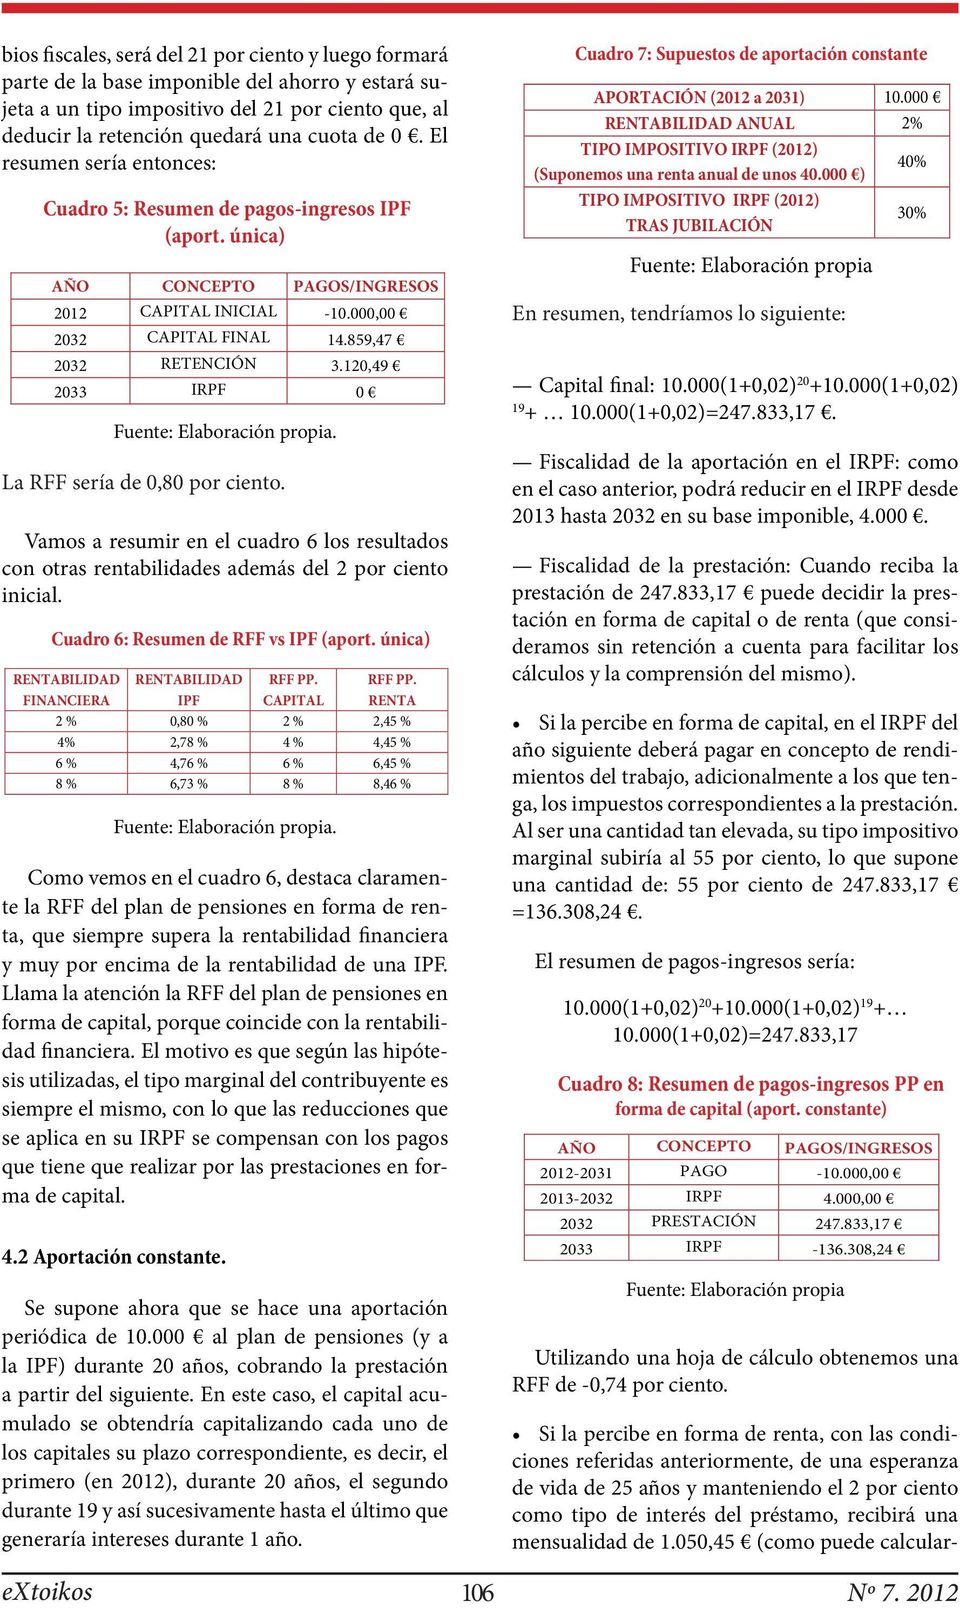 120,49 2033 IRPF 0 La RFF sería de 0,80 por ciento. Vamos a resumir en el cuadro 6 los resultados con otras rentabilidades además del 2 por ciento inicial. Cuadro 6: Resumen de RFF vs IPF (aport.